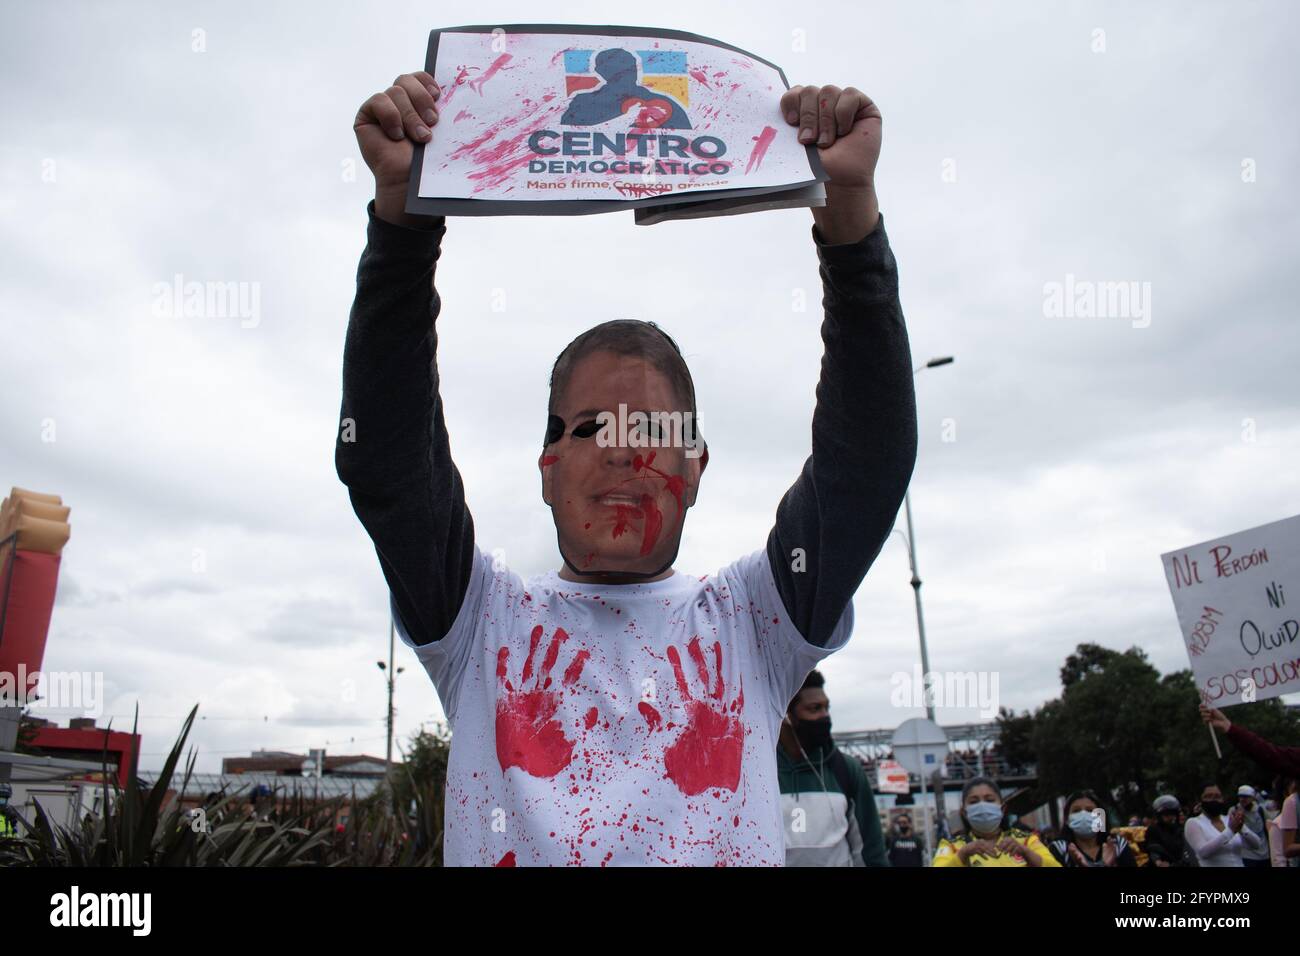 Un manifestant porte un masque du visage du président Iván Duque, tout en tenant un signe qui se lit comme suit : 'Centre émonique' en référence au parti politique colombien Centro Democrático à l'occasion d'un nouveau jour de manifestations à Bogotá, dans le cadre de la commémoration d'un mois du début de la grève nationale en Colombie contre le gouvernement d'Ivan Duque, le 28 mars 2021. Banque D'Images